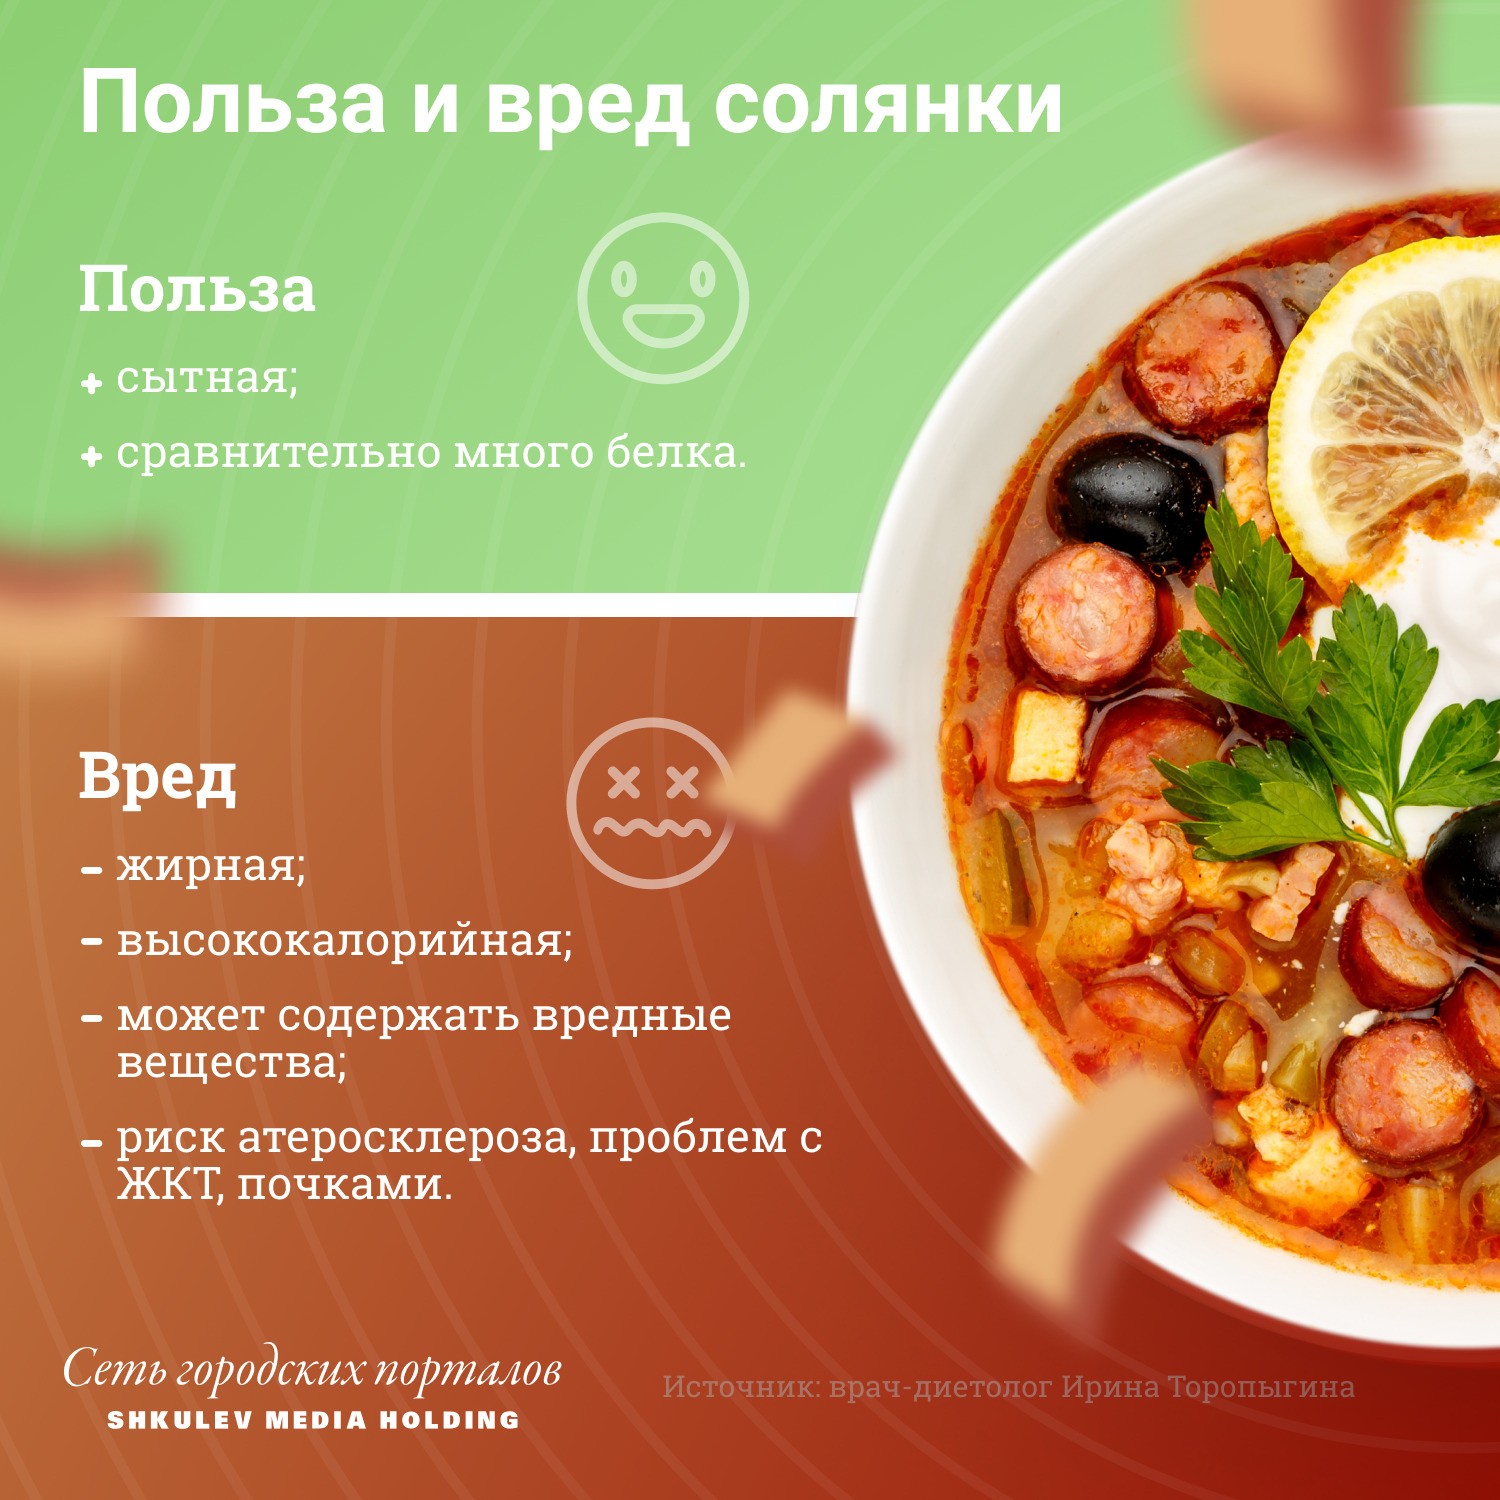 Калорийность различных супов